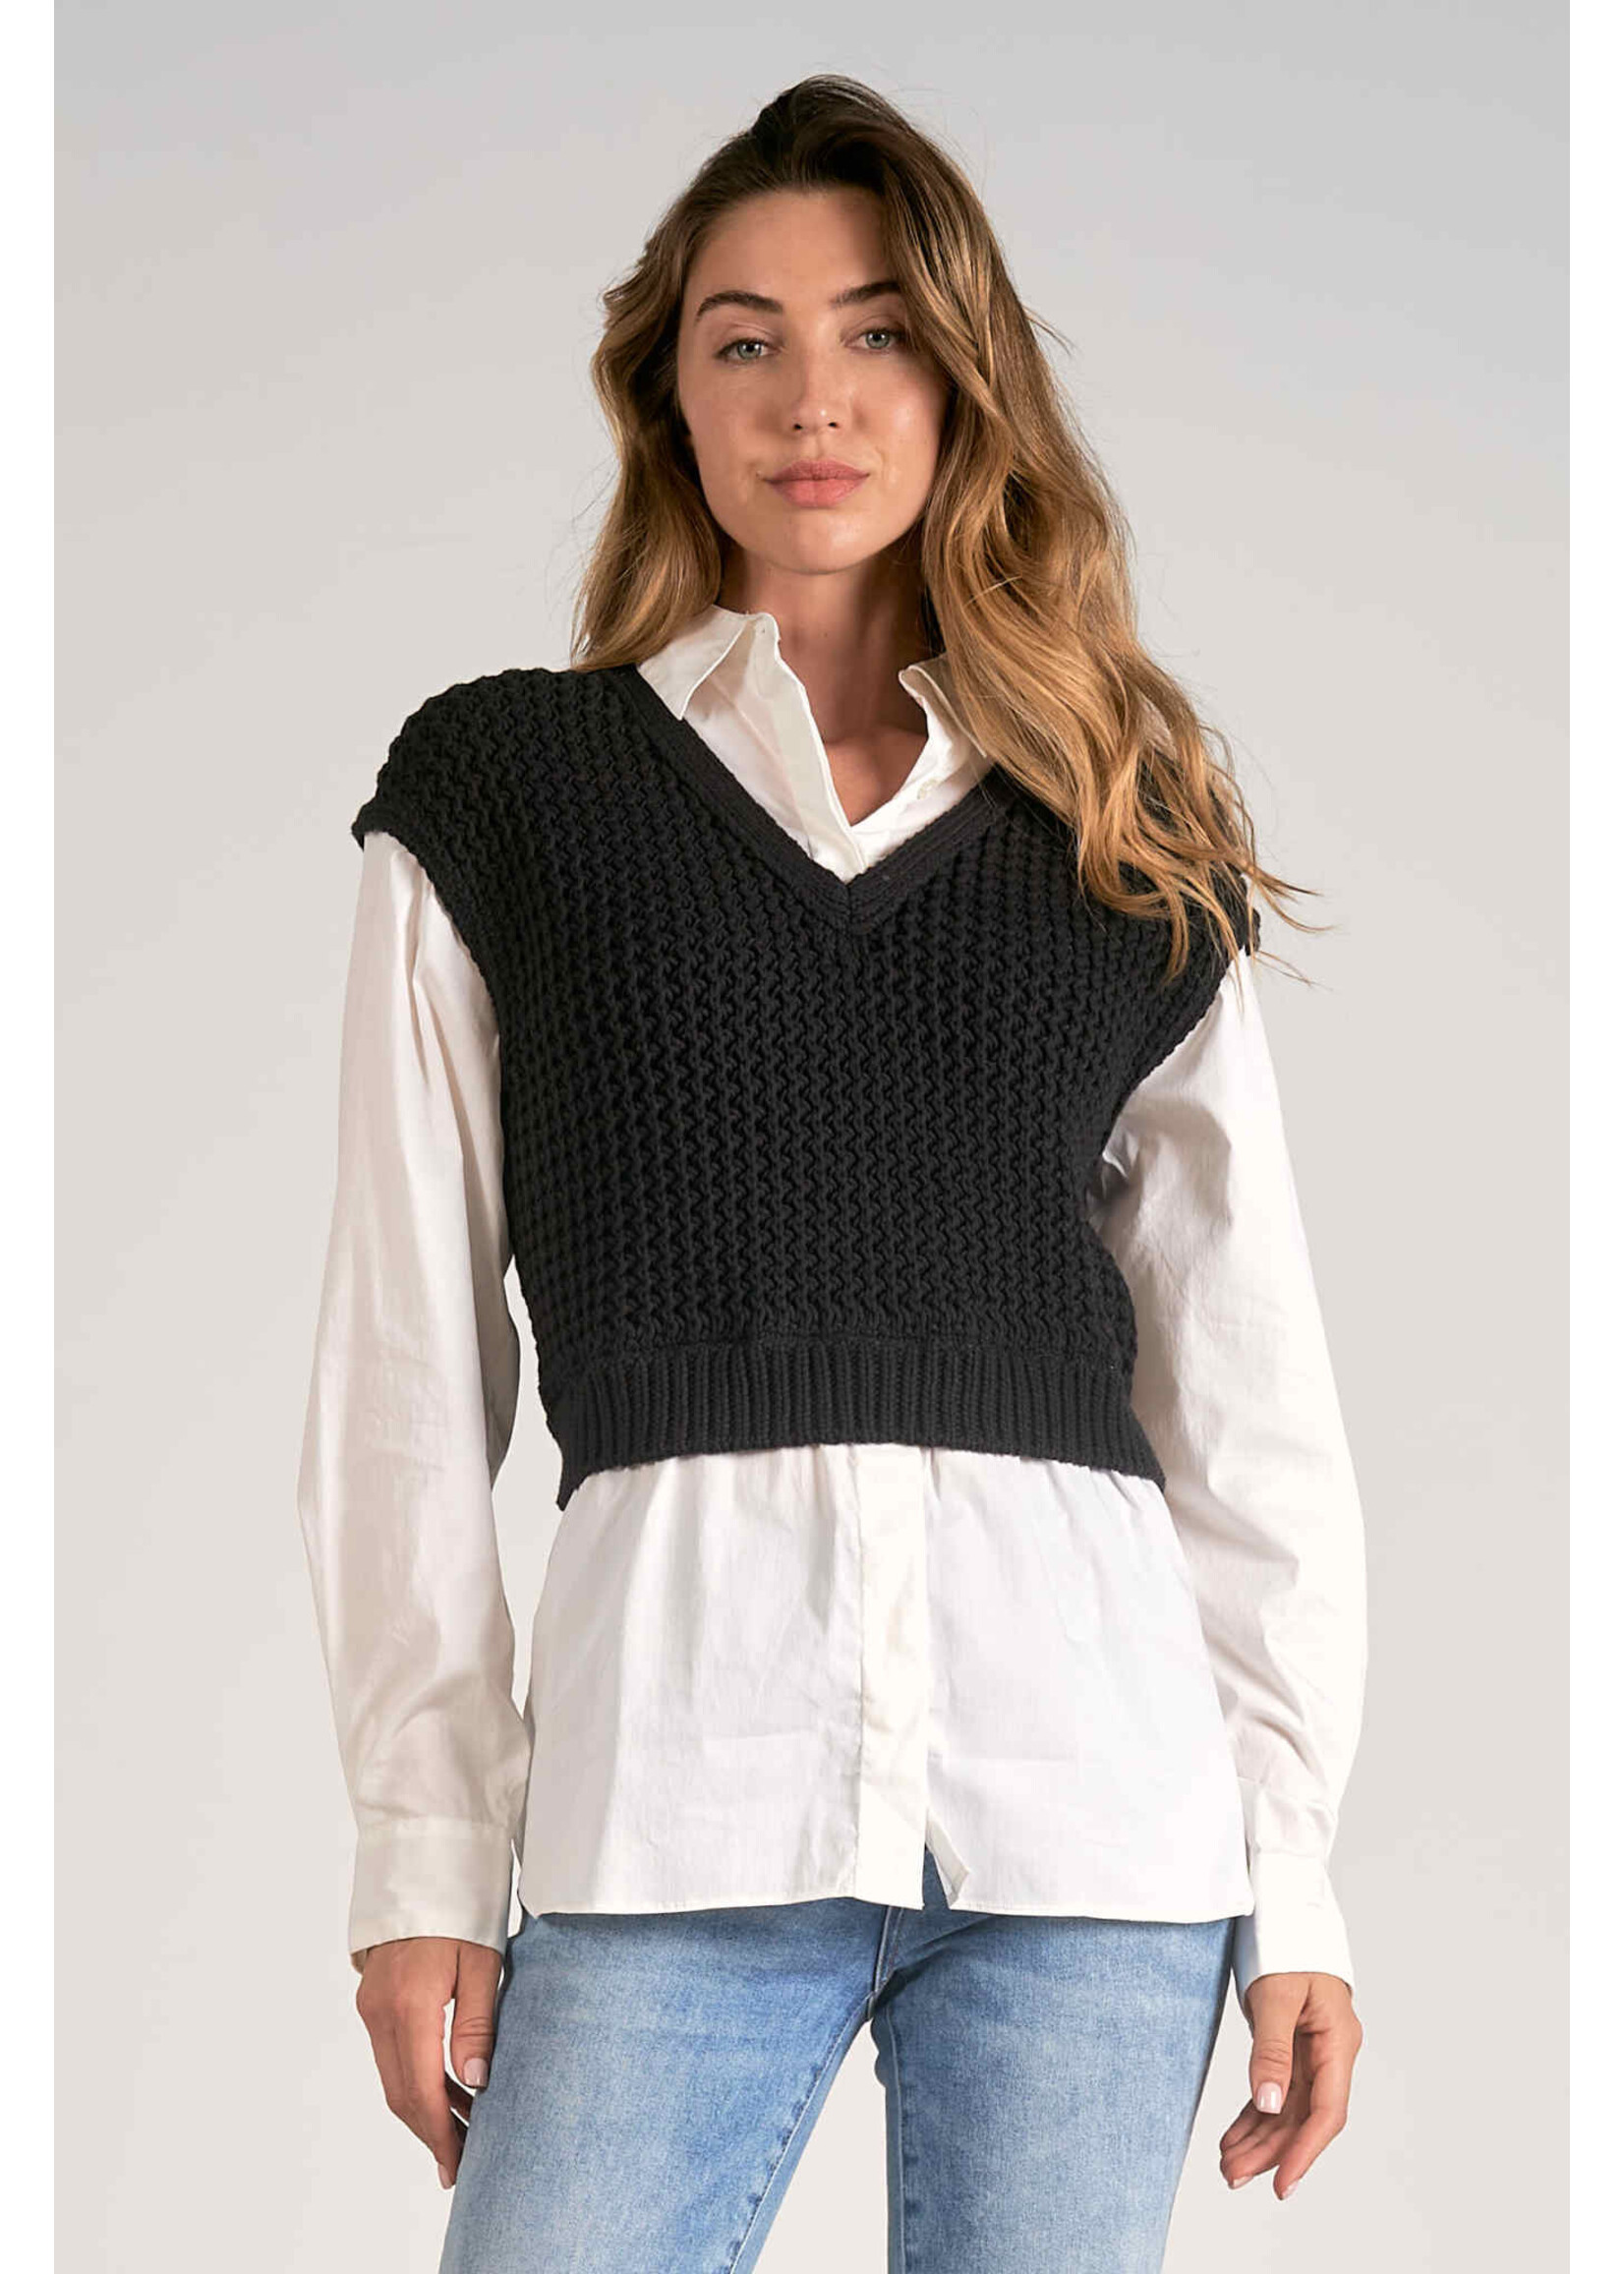 Elan Sweater/Shirt Combo (Black/White)